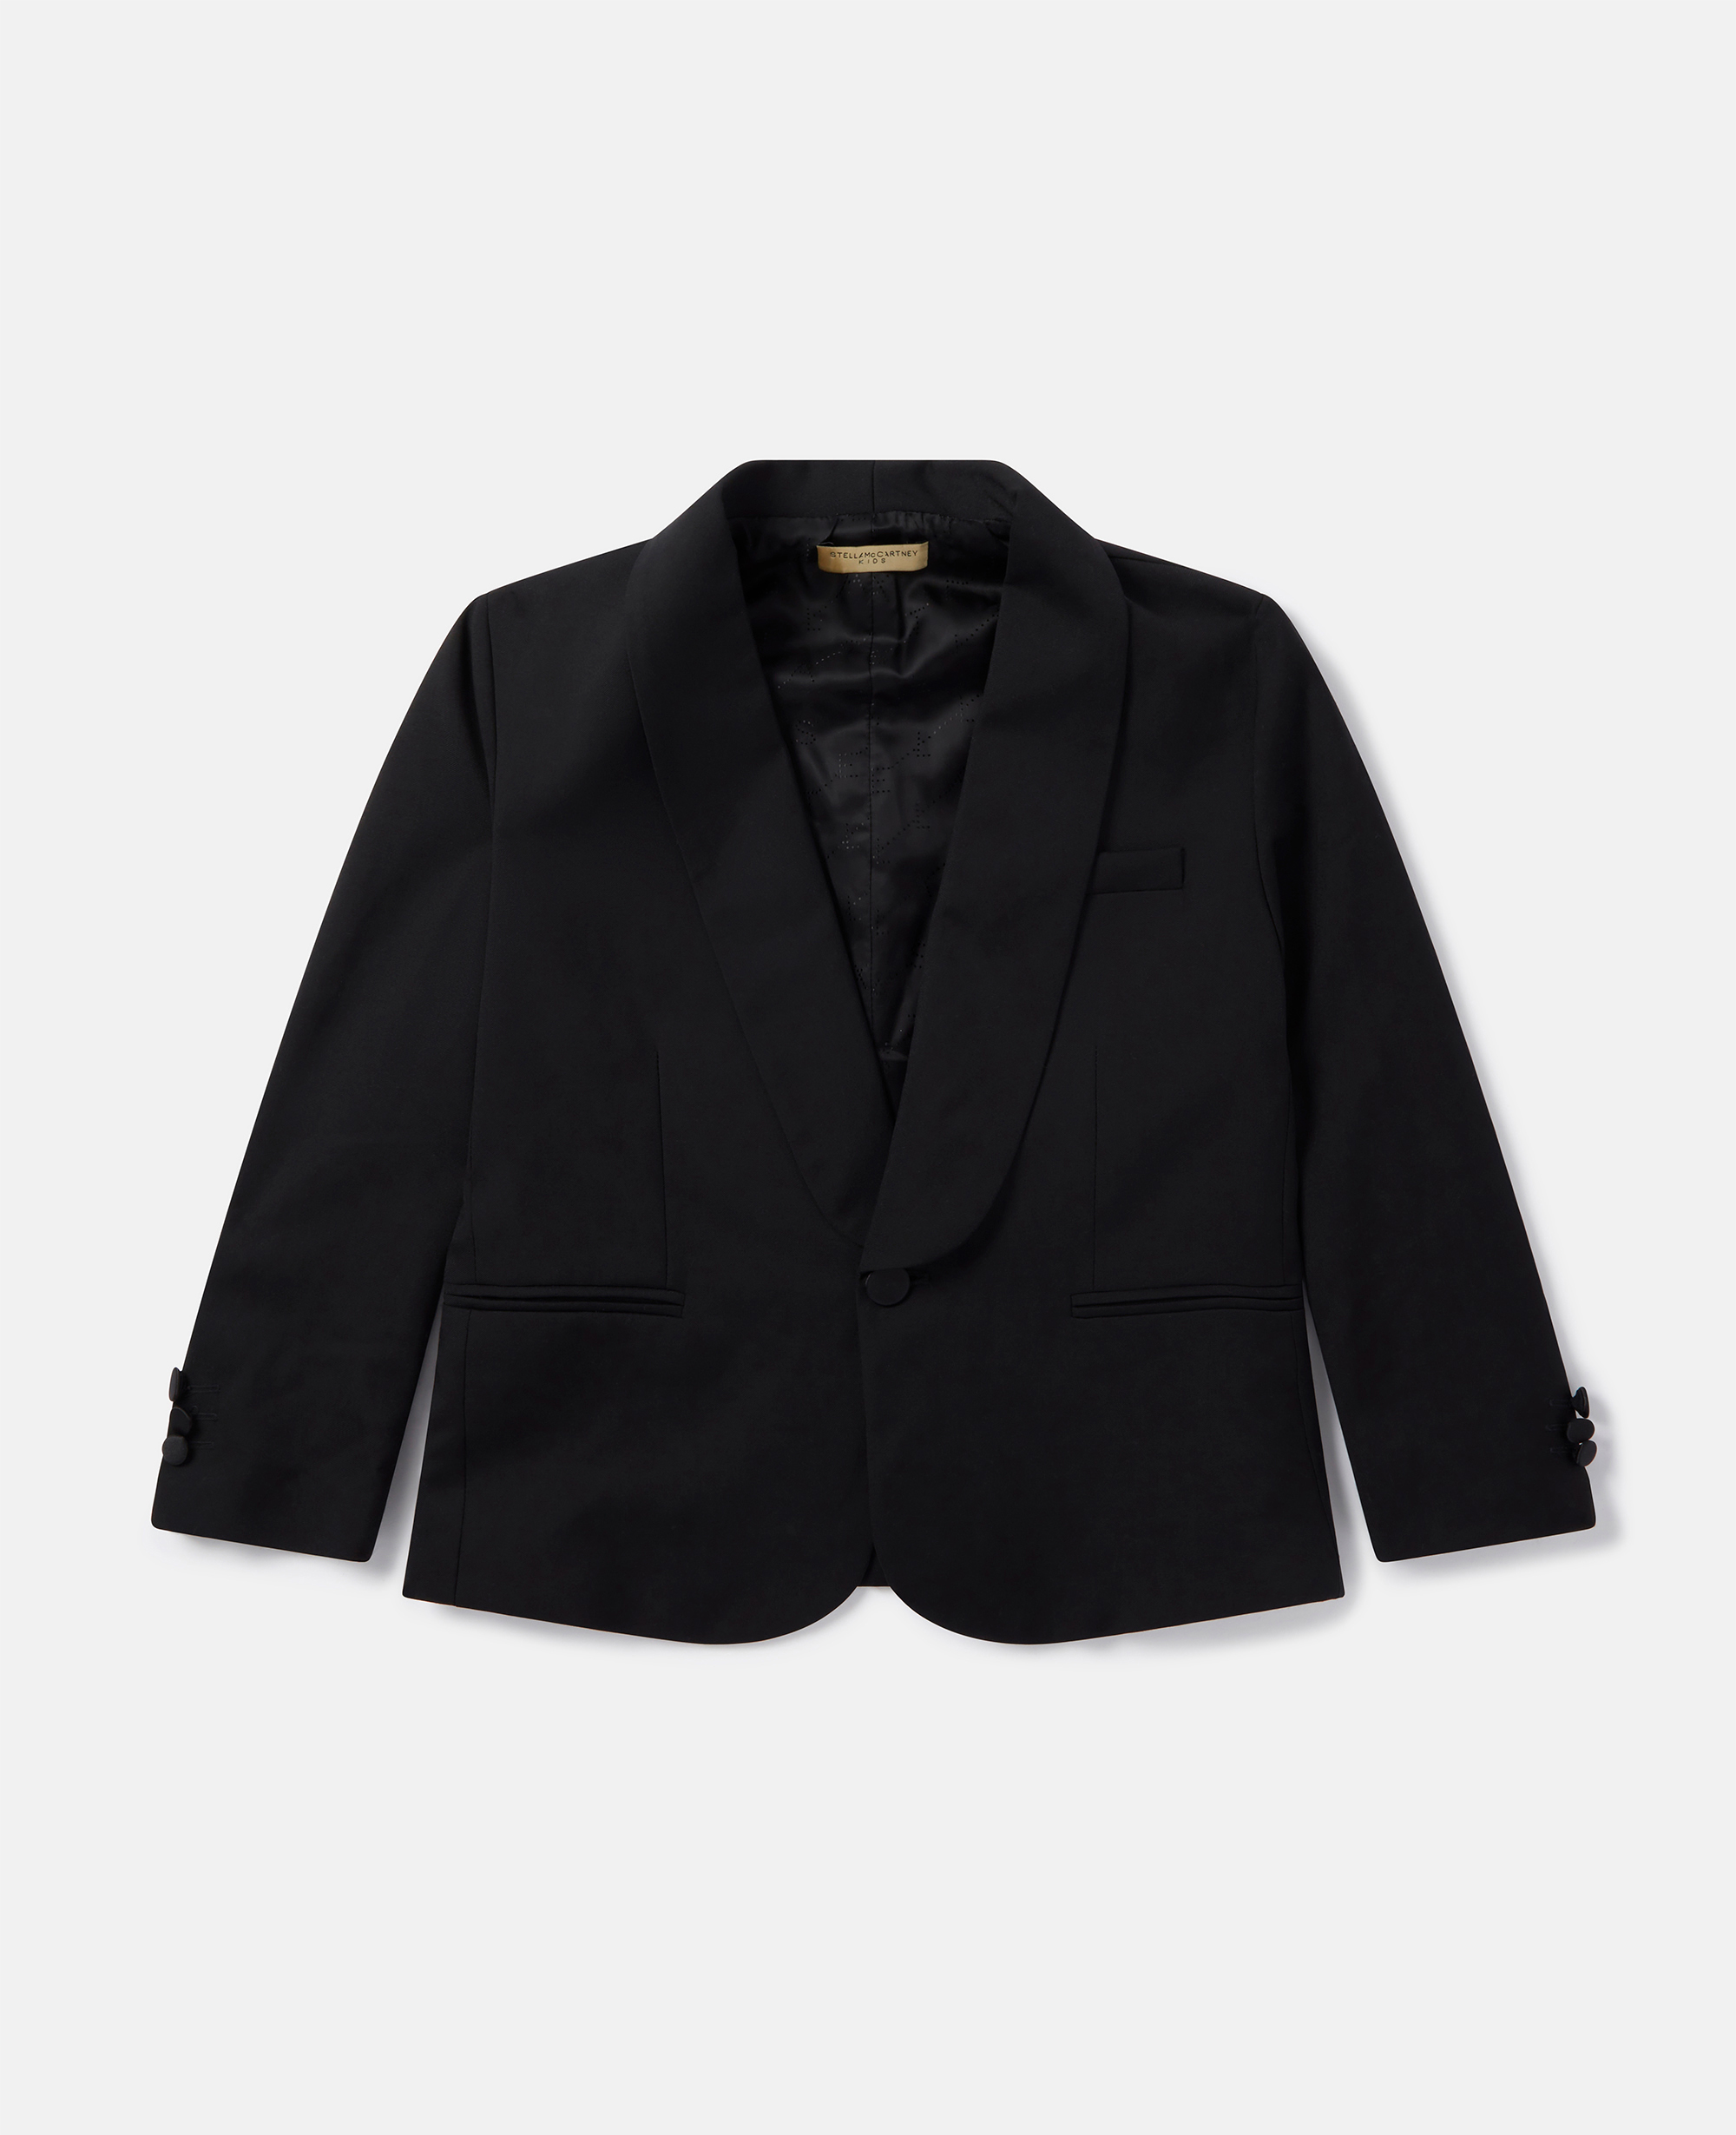 Stella Mccartney Tuxedo Jacket In Black